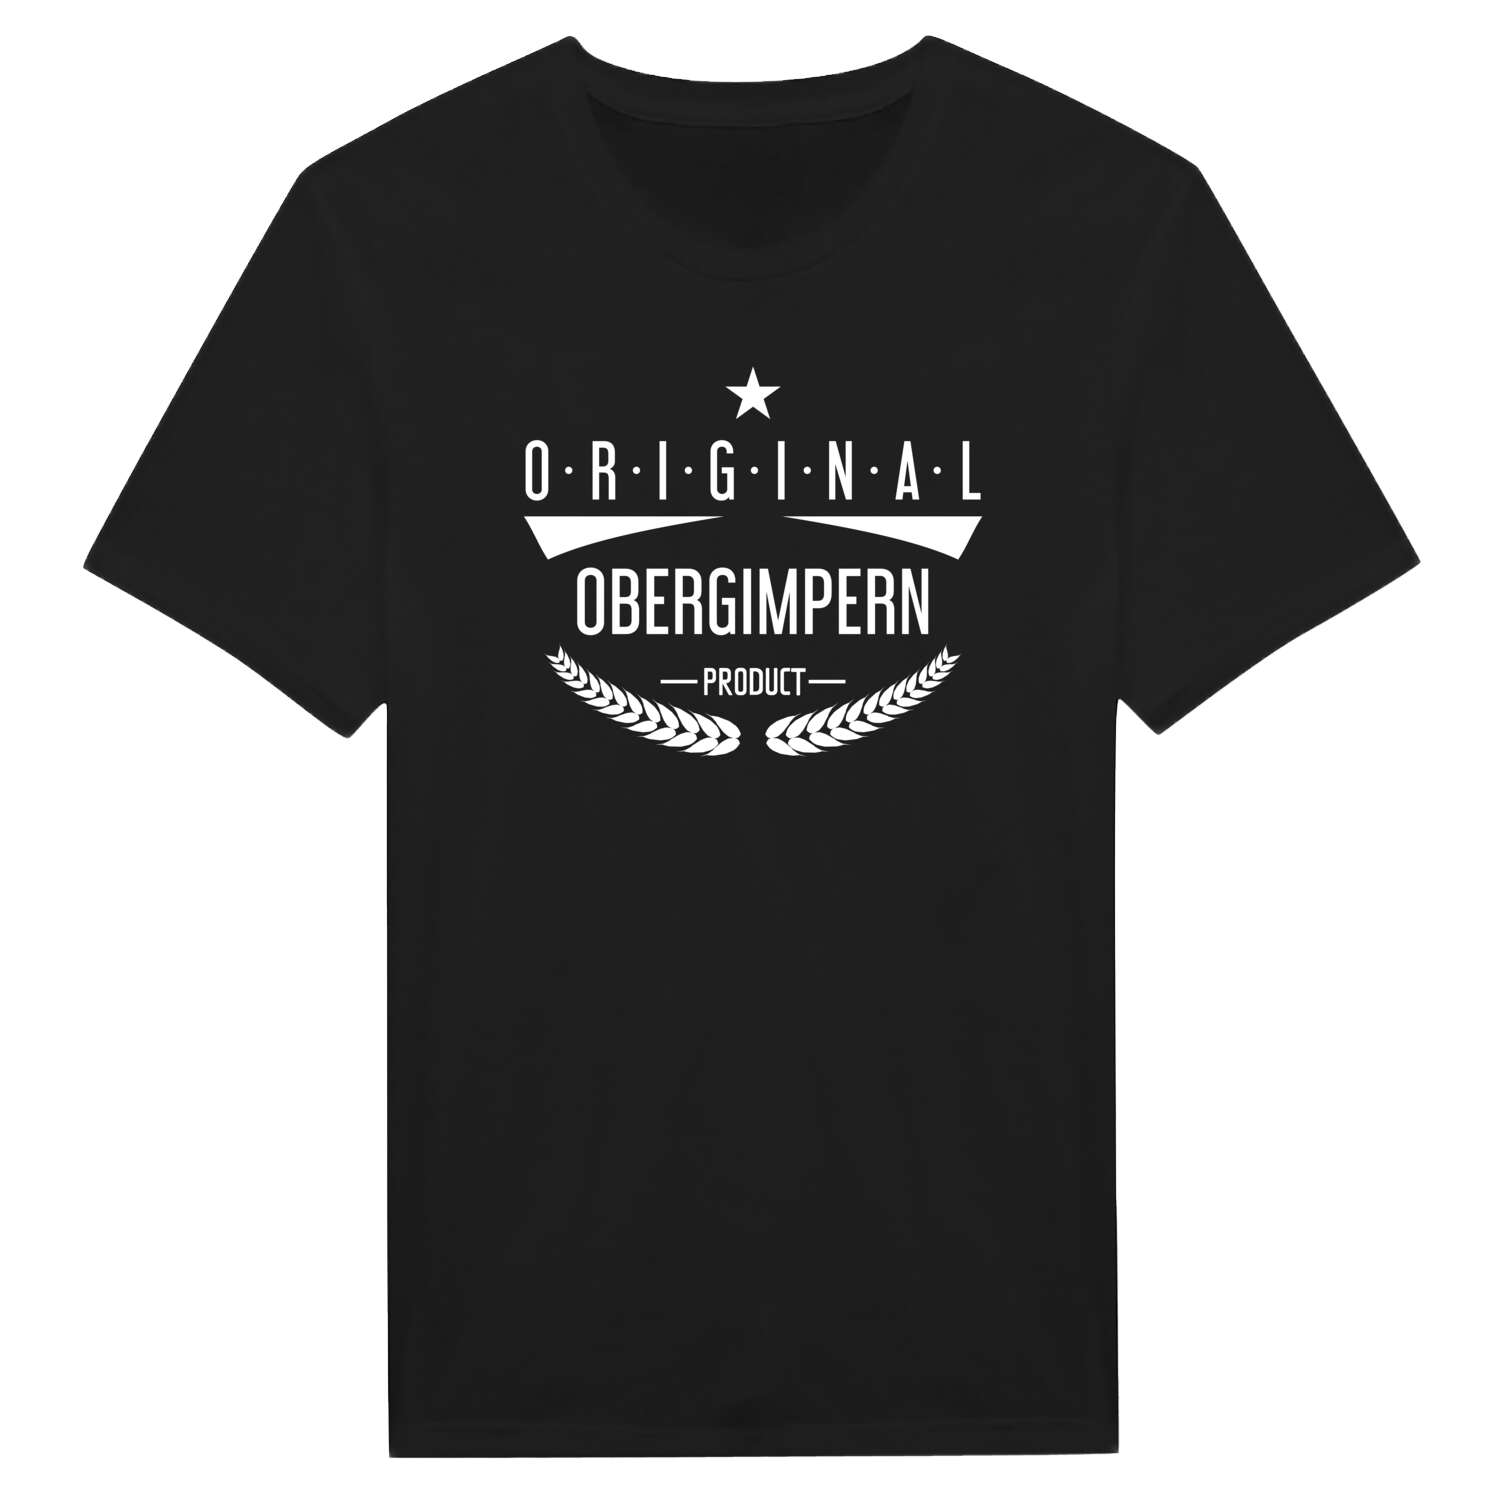 Obergimpern T-Shirt »Original Product«